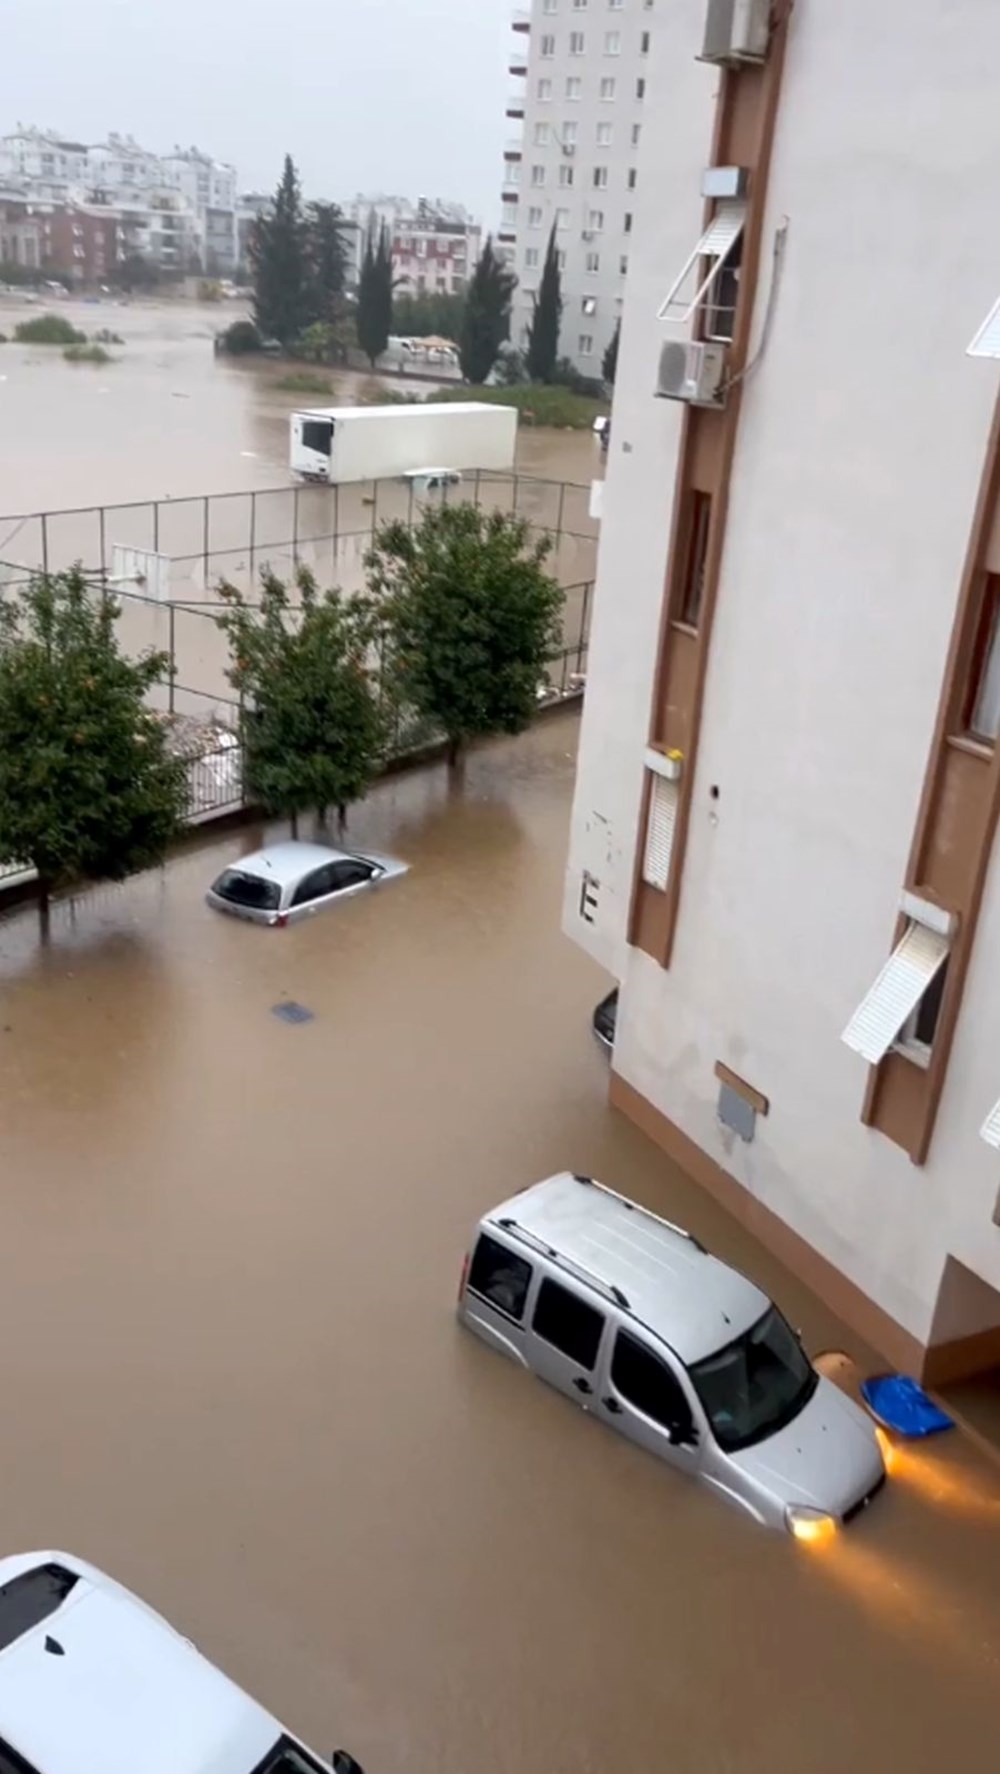 Antalya'da sel ve su baskını: 1 kişi yaşamını yitirdi, 6  ilçede eğitime ara verildi (4 şehir için turuncu kodlu uyarı) - 4